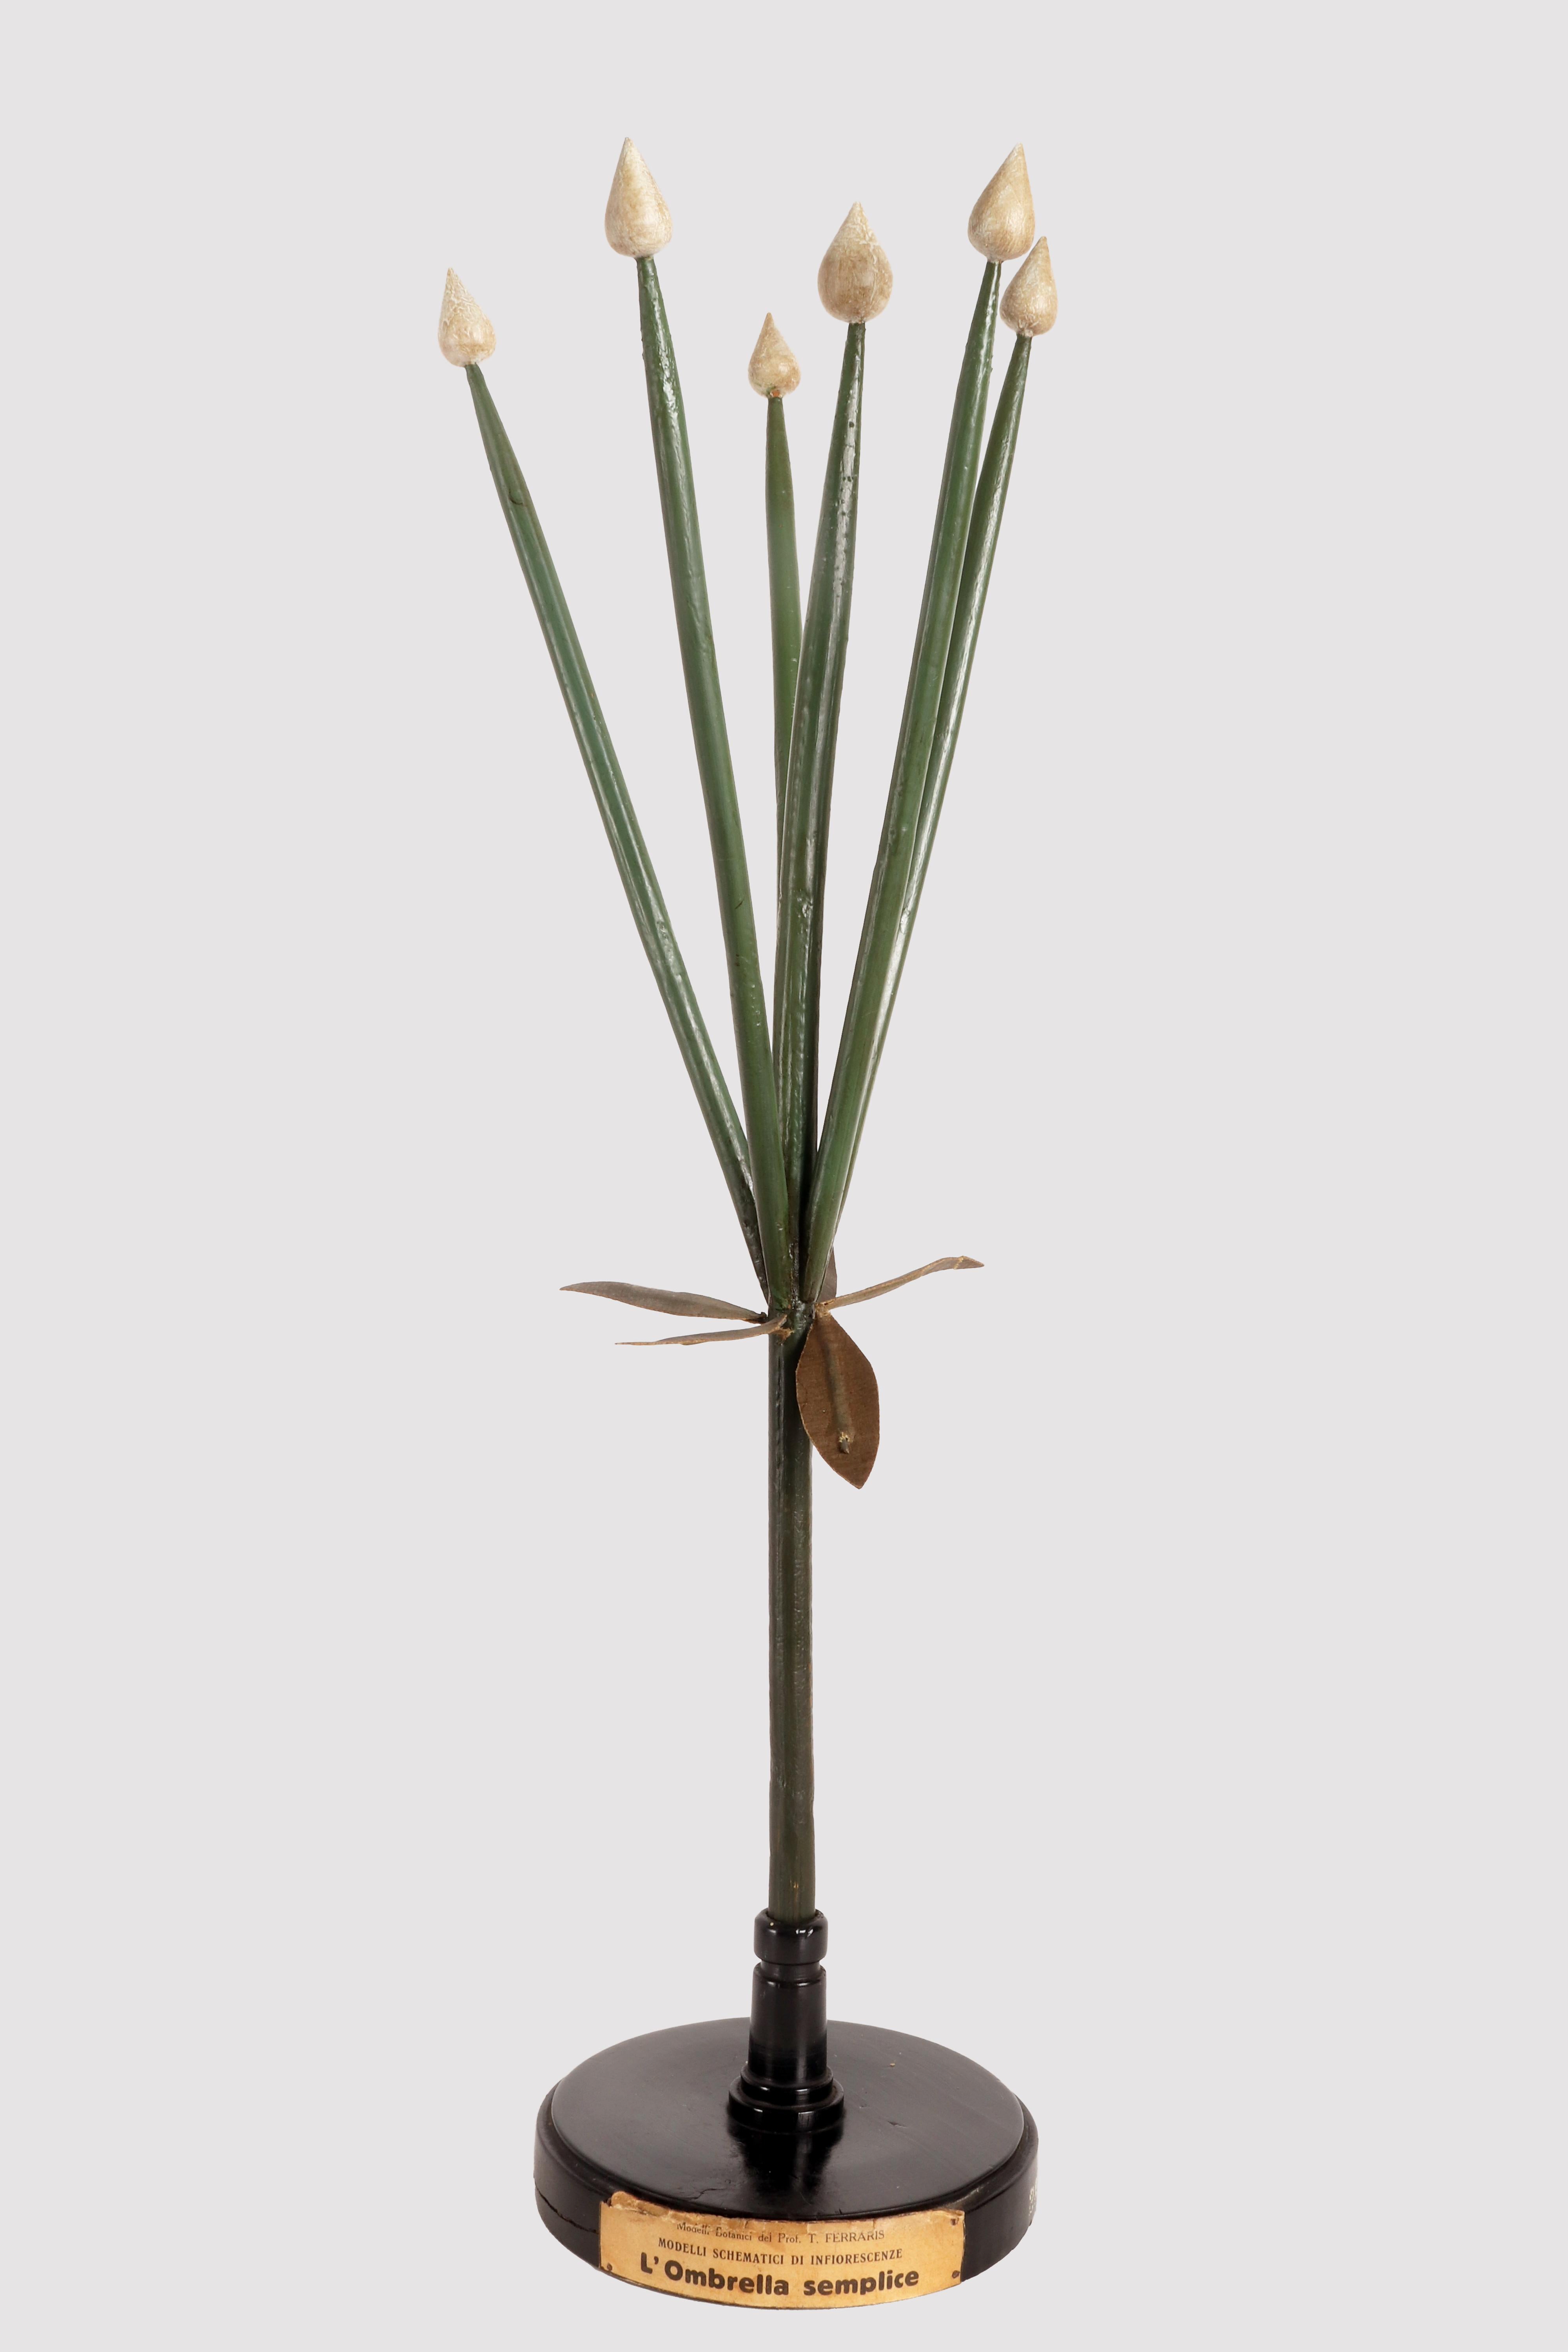 Ein seltenes botanisches Schemamodell von Prof. T. Ferraris, didaktischer Gebrauch, einer Art von Blütenstandsexemplar, dem Simple Umbrella, hergestellt mit handbemalten farbigen Gipssteinen, hölzernen Zweigen und bemalten Pappmaché-Komponenten.